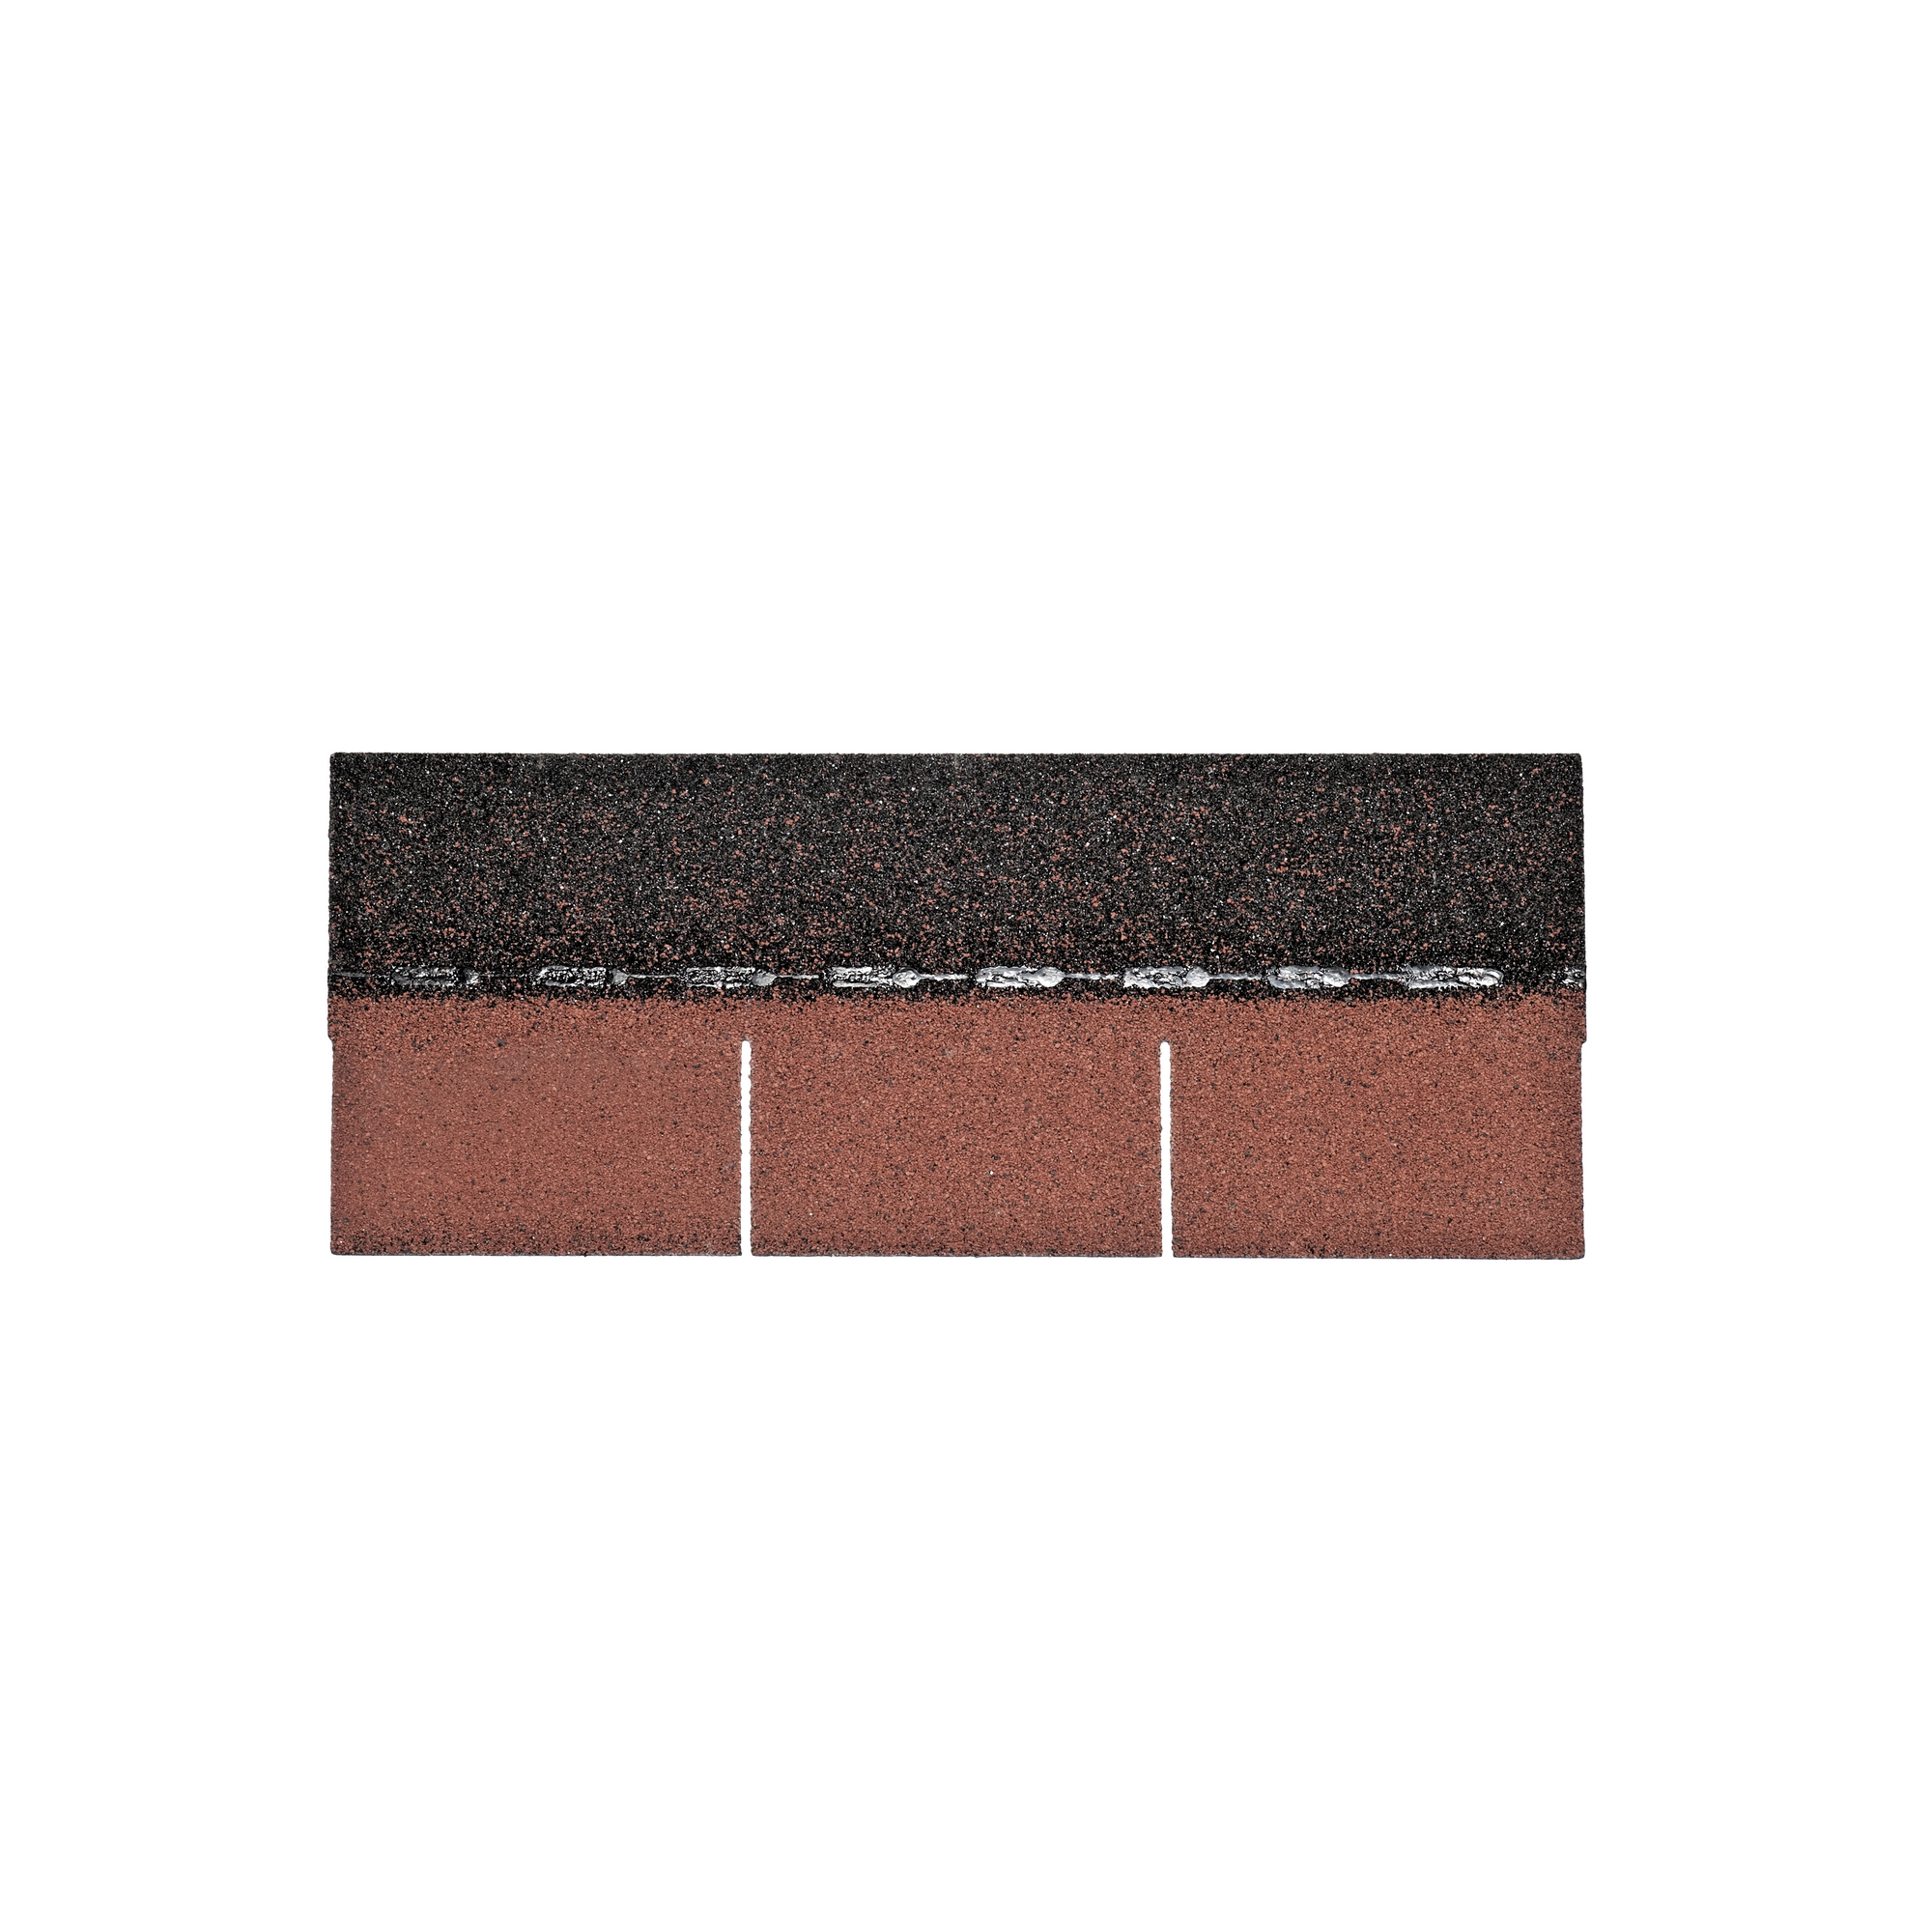 Bitumen-Dachschindeln ziegelrot 33,6 x 100 cm + product picture